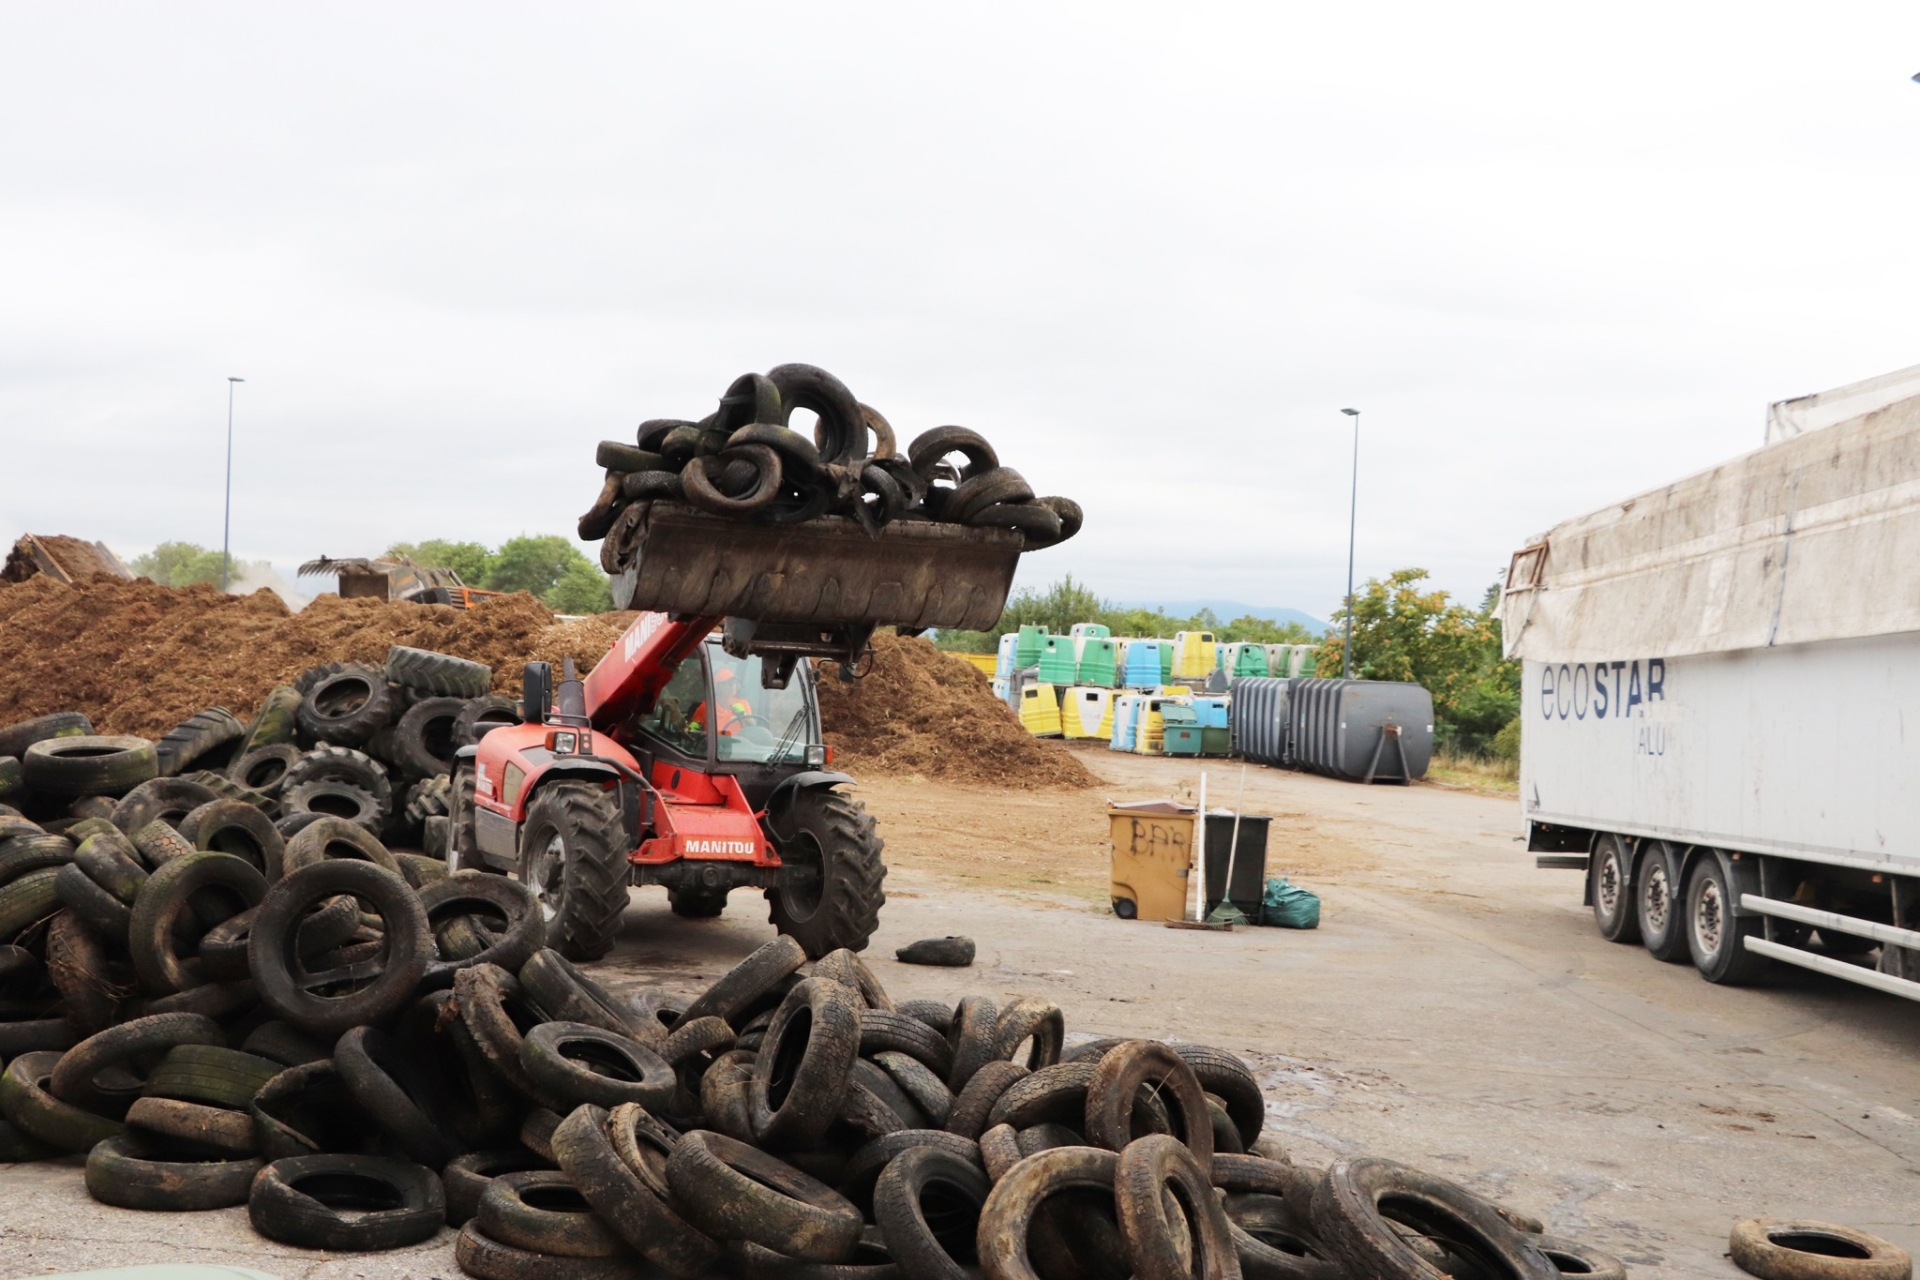 Collecte de pneus agricoles usagés en Sud-Grésivaudan